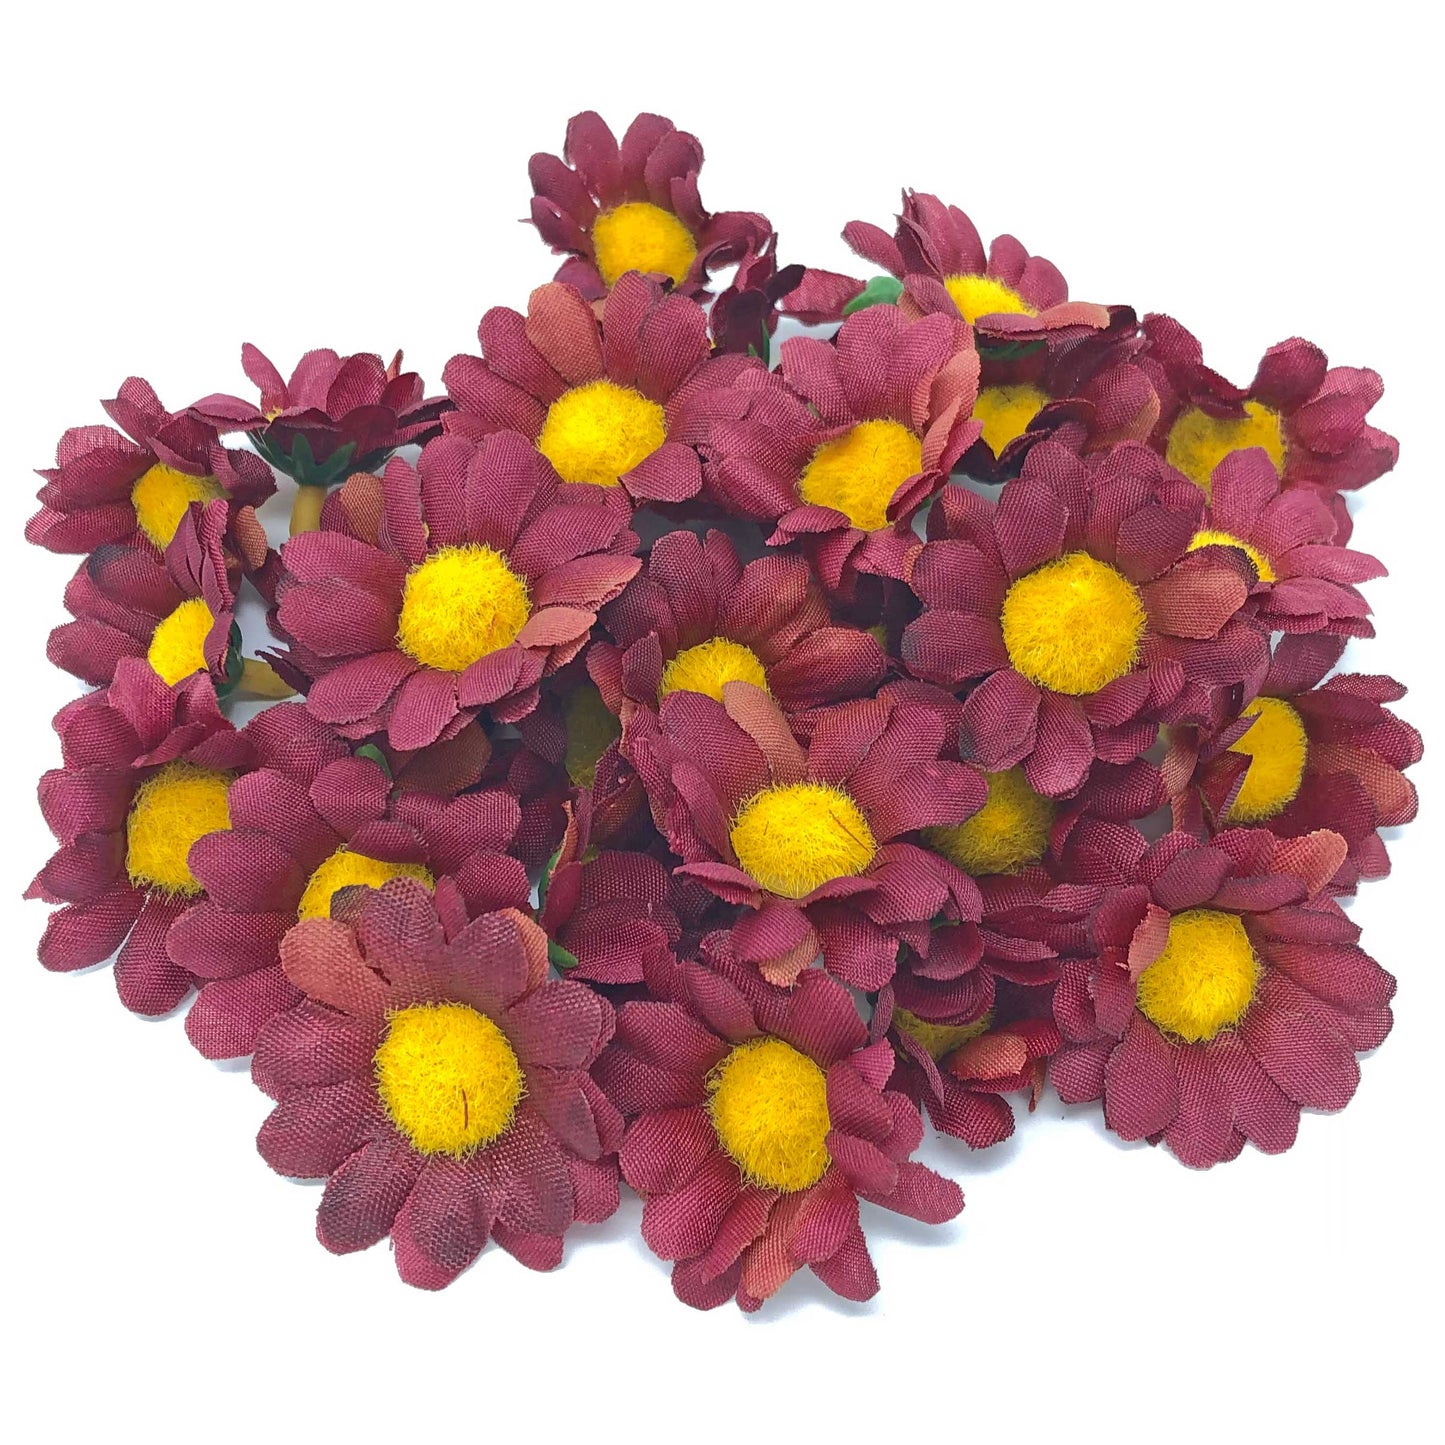 Burgundy 35mm Synthetic Daisy Flowers (Faux Silk) - Mini Daisy Heads